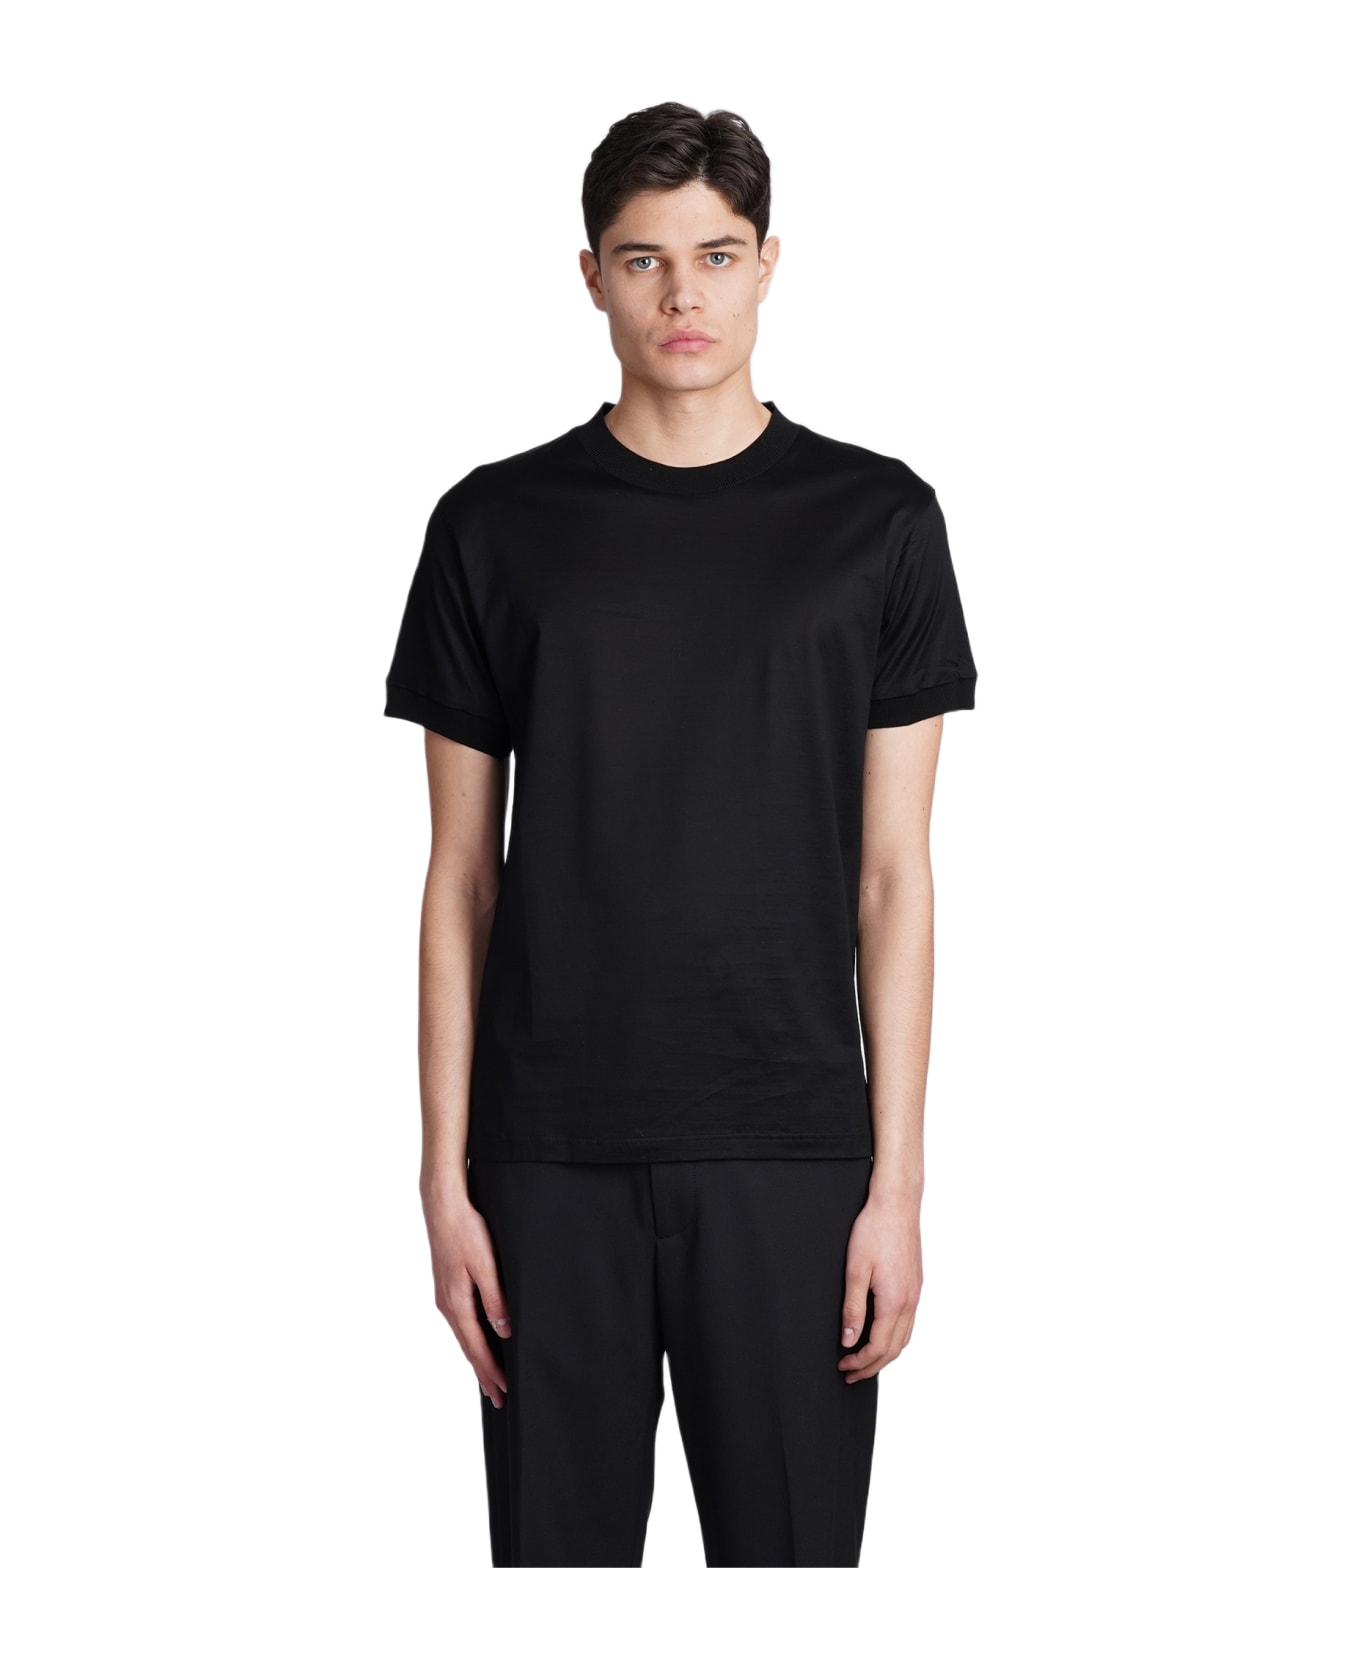 Tagliatore 0205 Keys T-shirt In Black Cotton - black